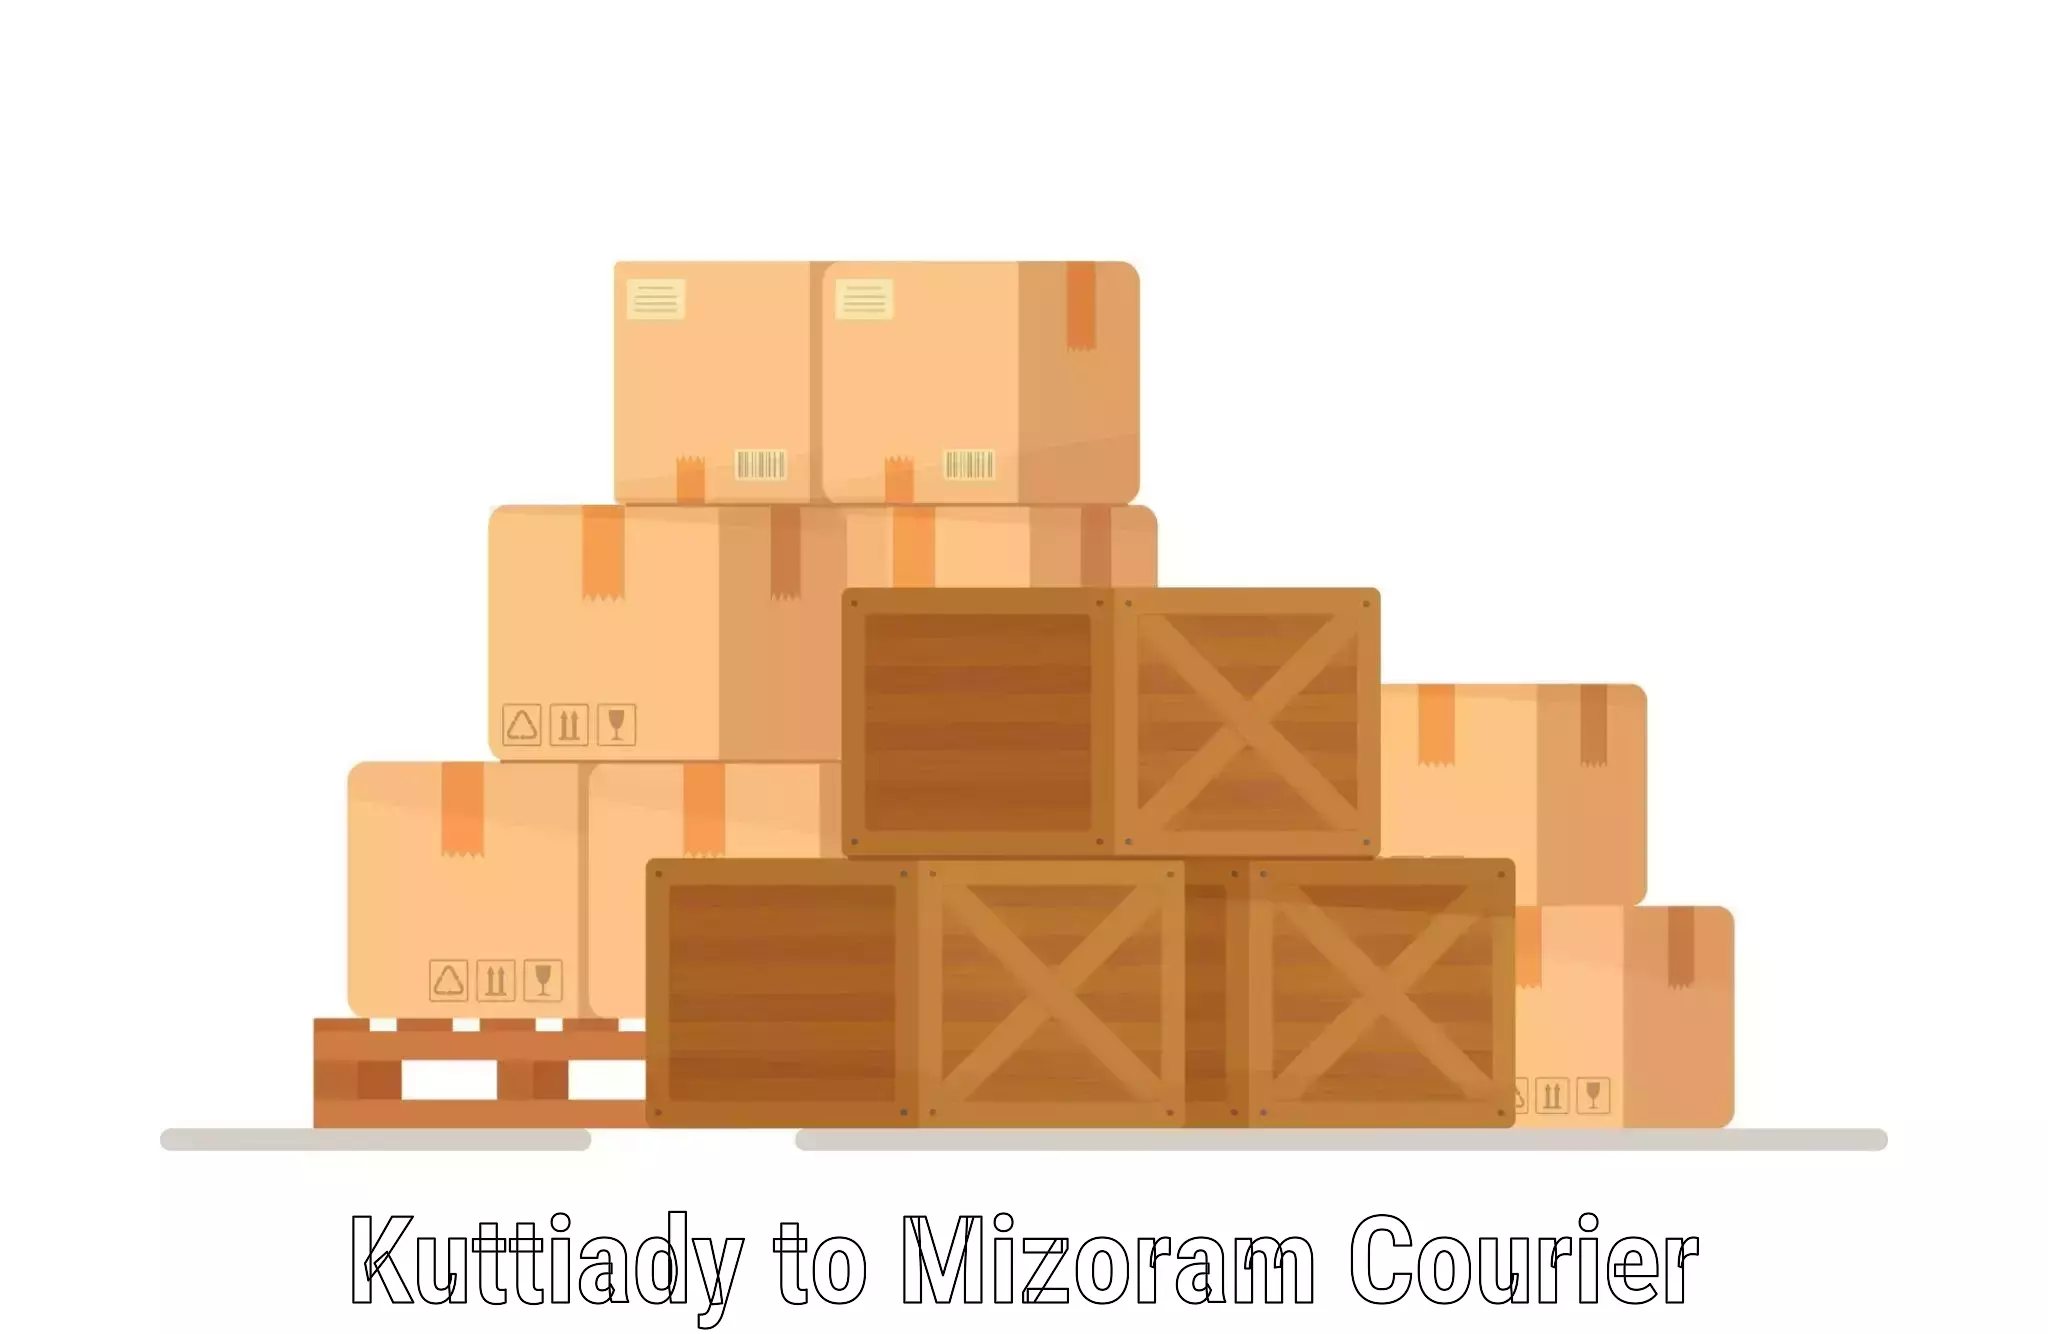 Customizable shipping options Kuttiady to Lawngtlai